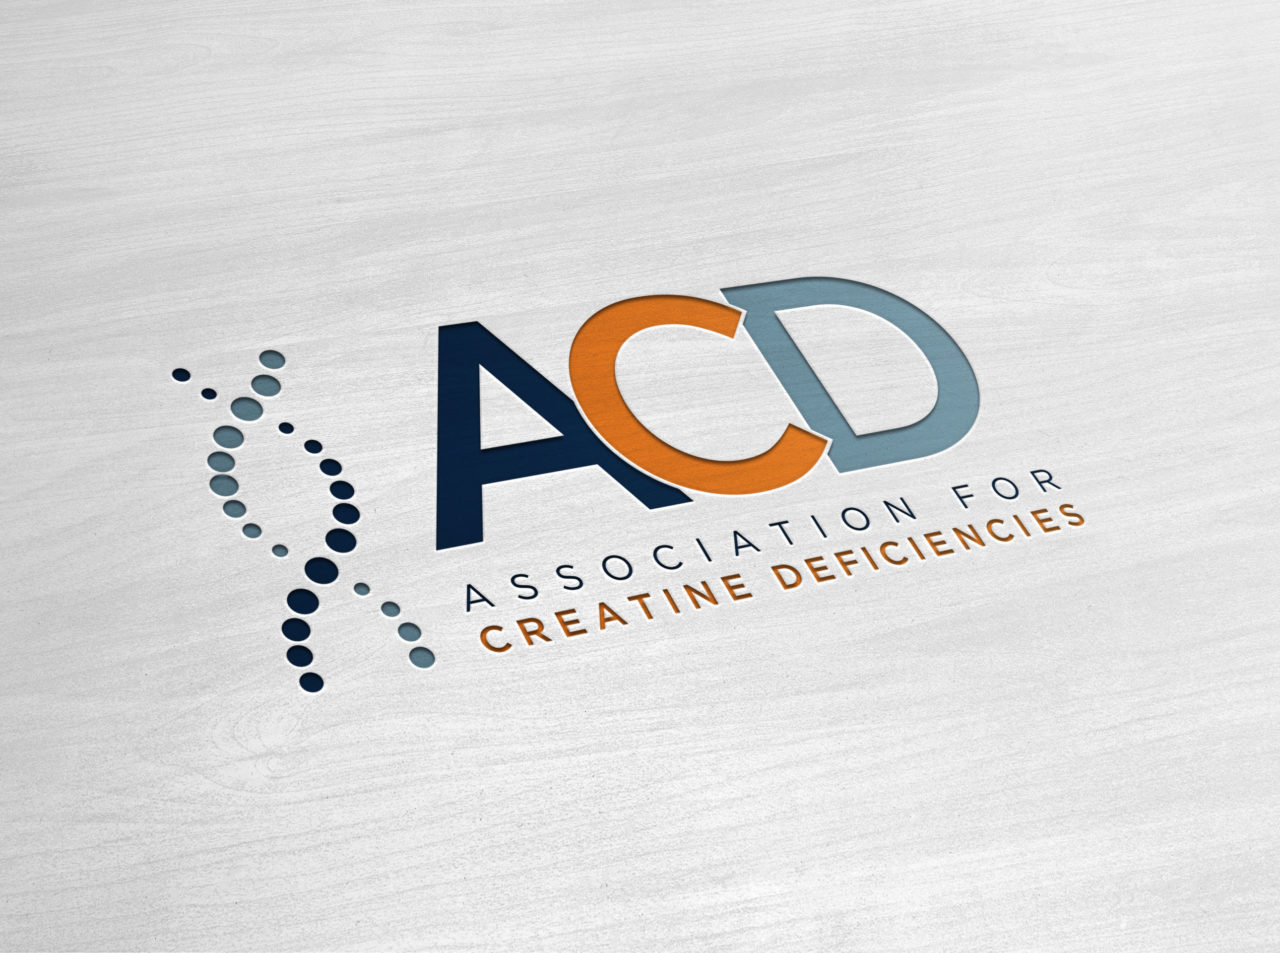 Association for Creatine Deficiencies color logo